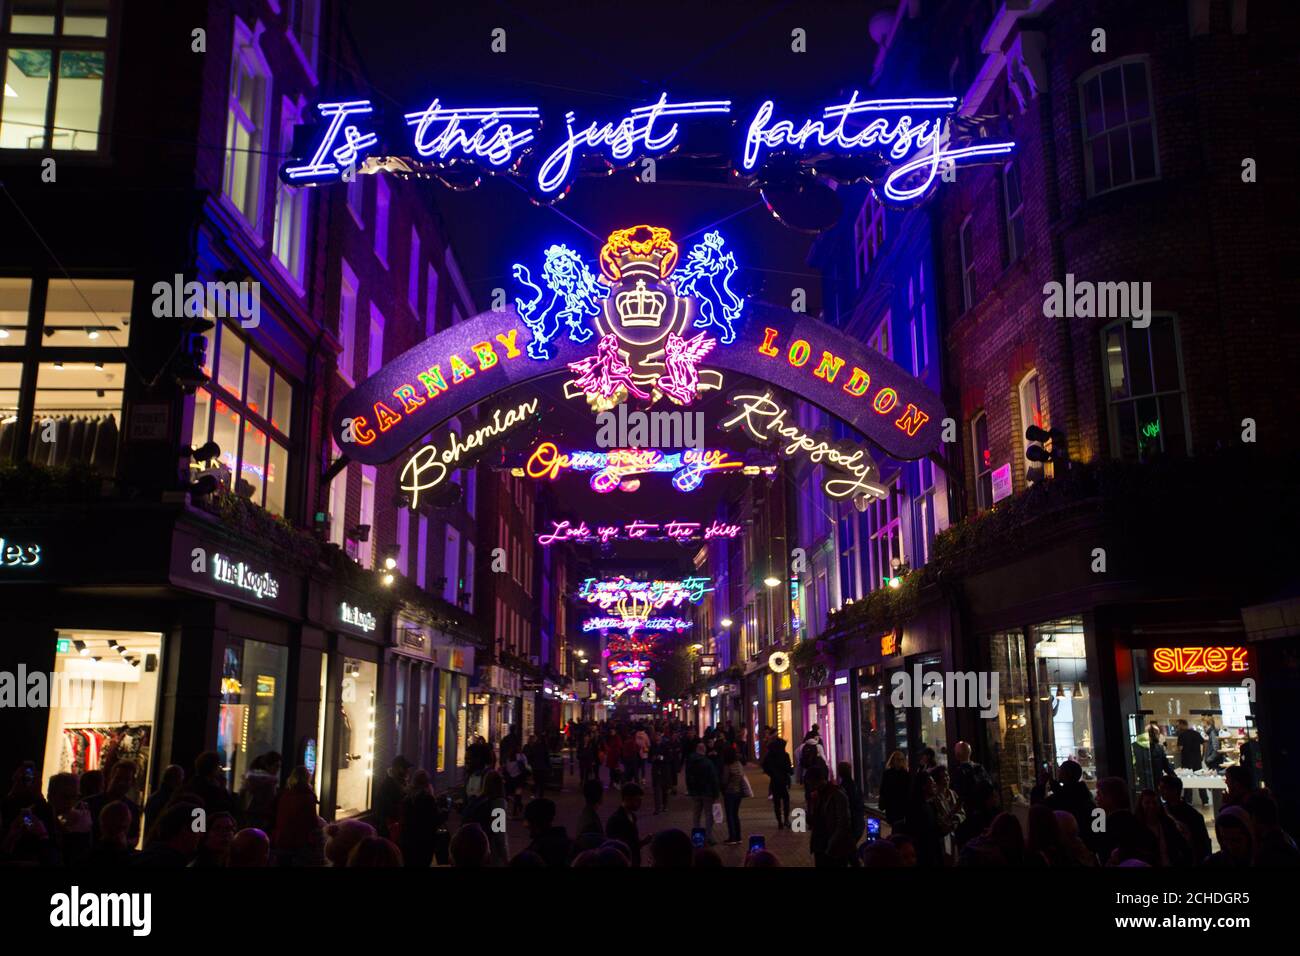 Vista generale di un'installazione leggera che celebra la canzone regina Bohemian Rhapsody a Carnaby Street a Londra. Le luci con i testi di Freddie Mercury illumineranno la strada fino a gennaio, in occasione del prossimo film Bohemian Rhapsody. Foto Stock